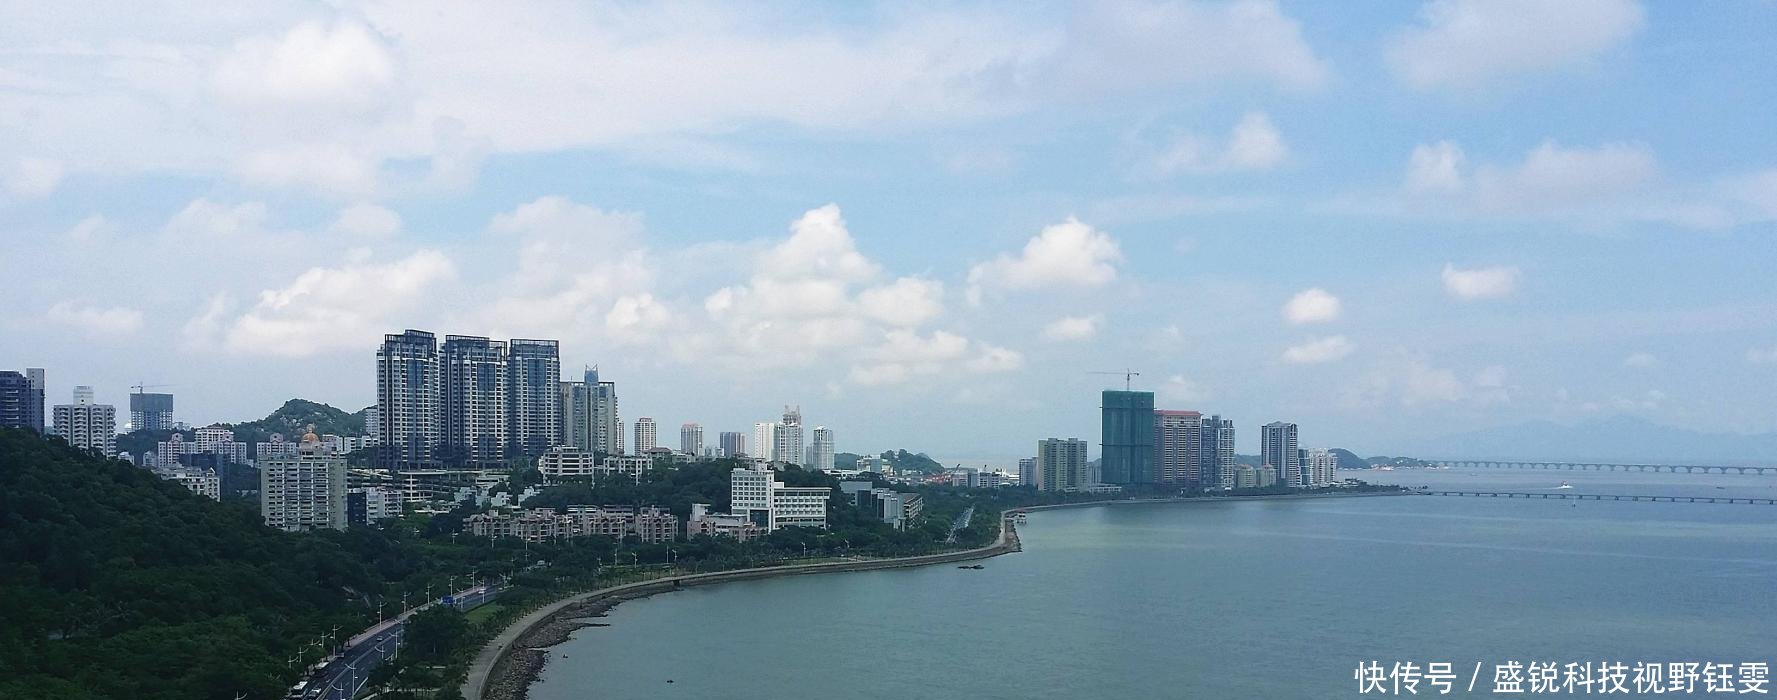 广东珠海的人均收入紧追东莞,排名省内前五